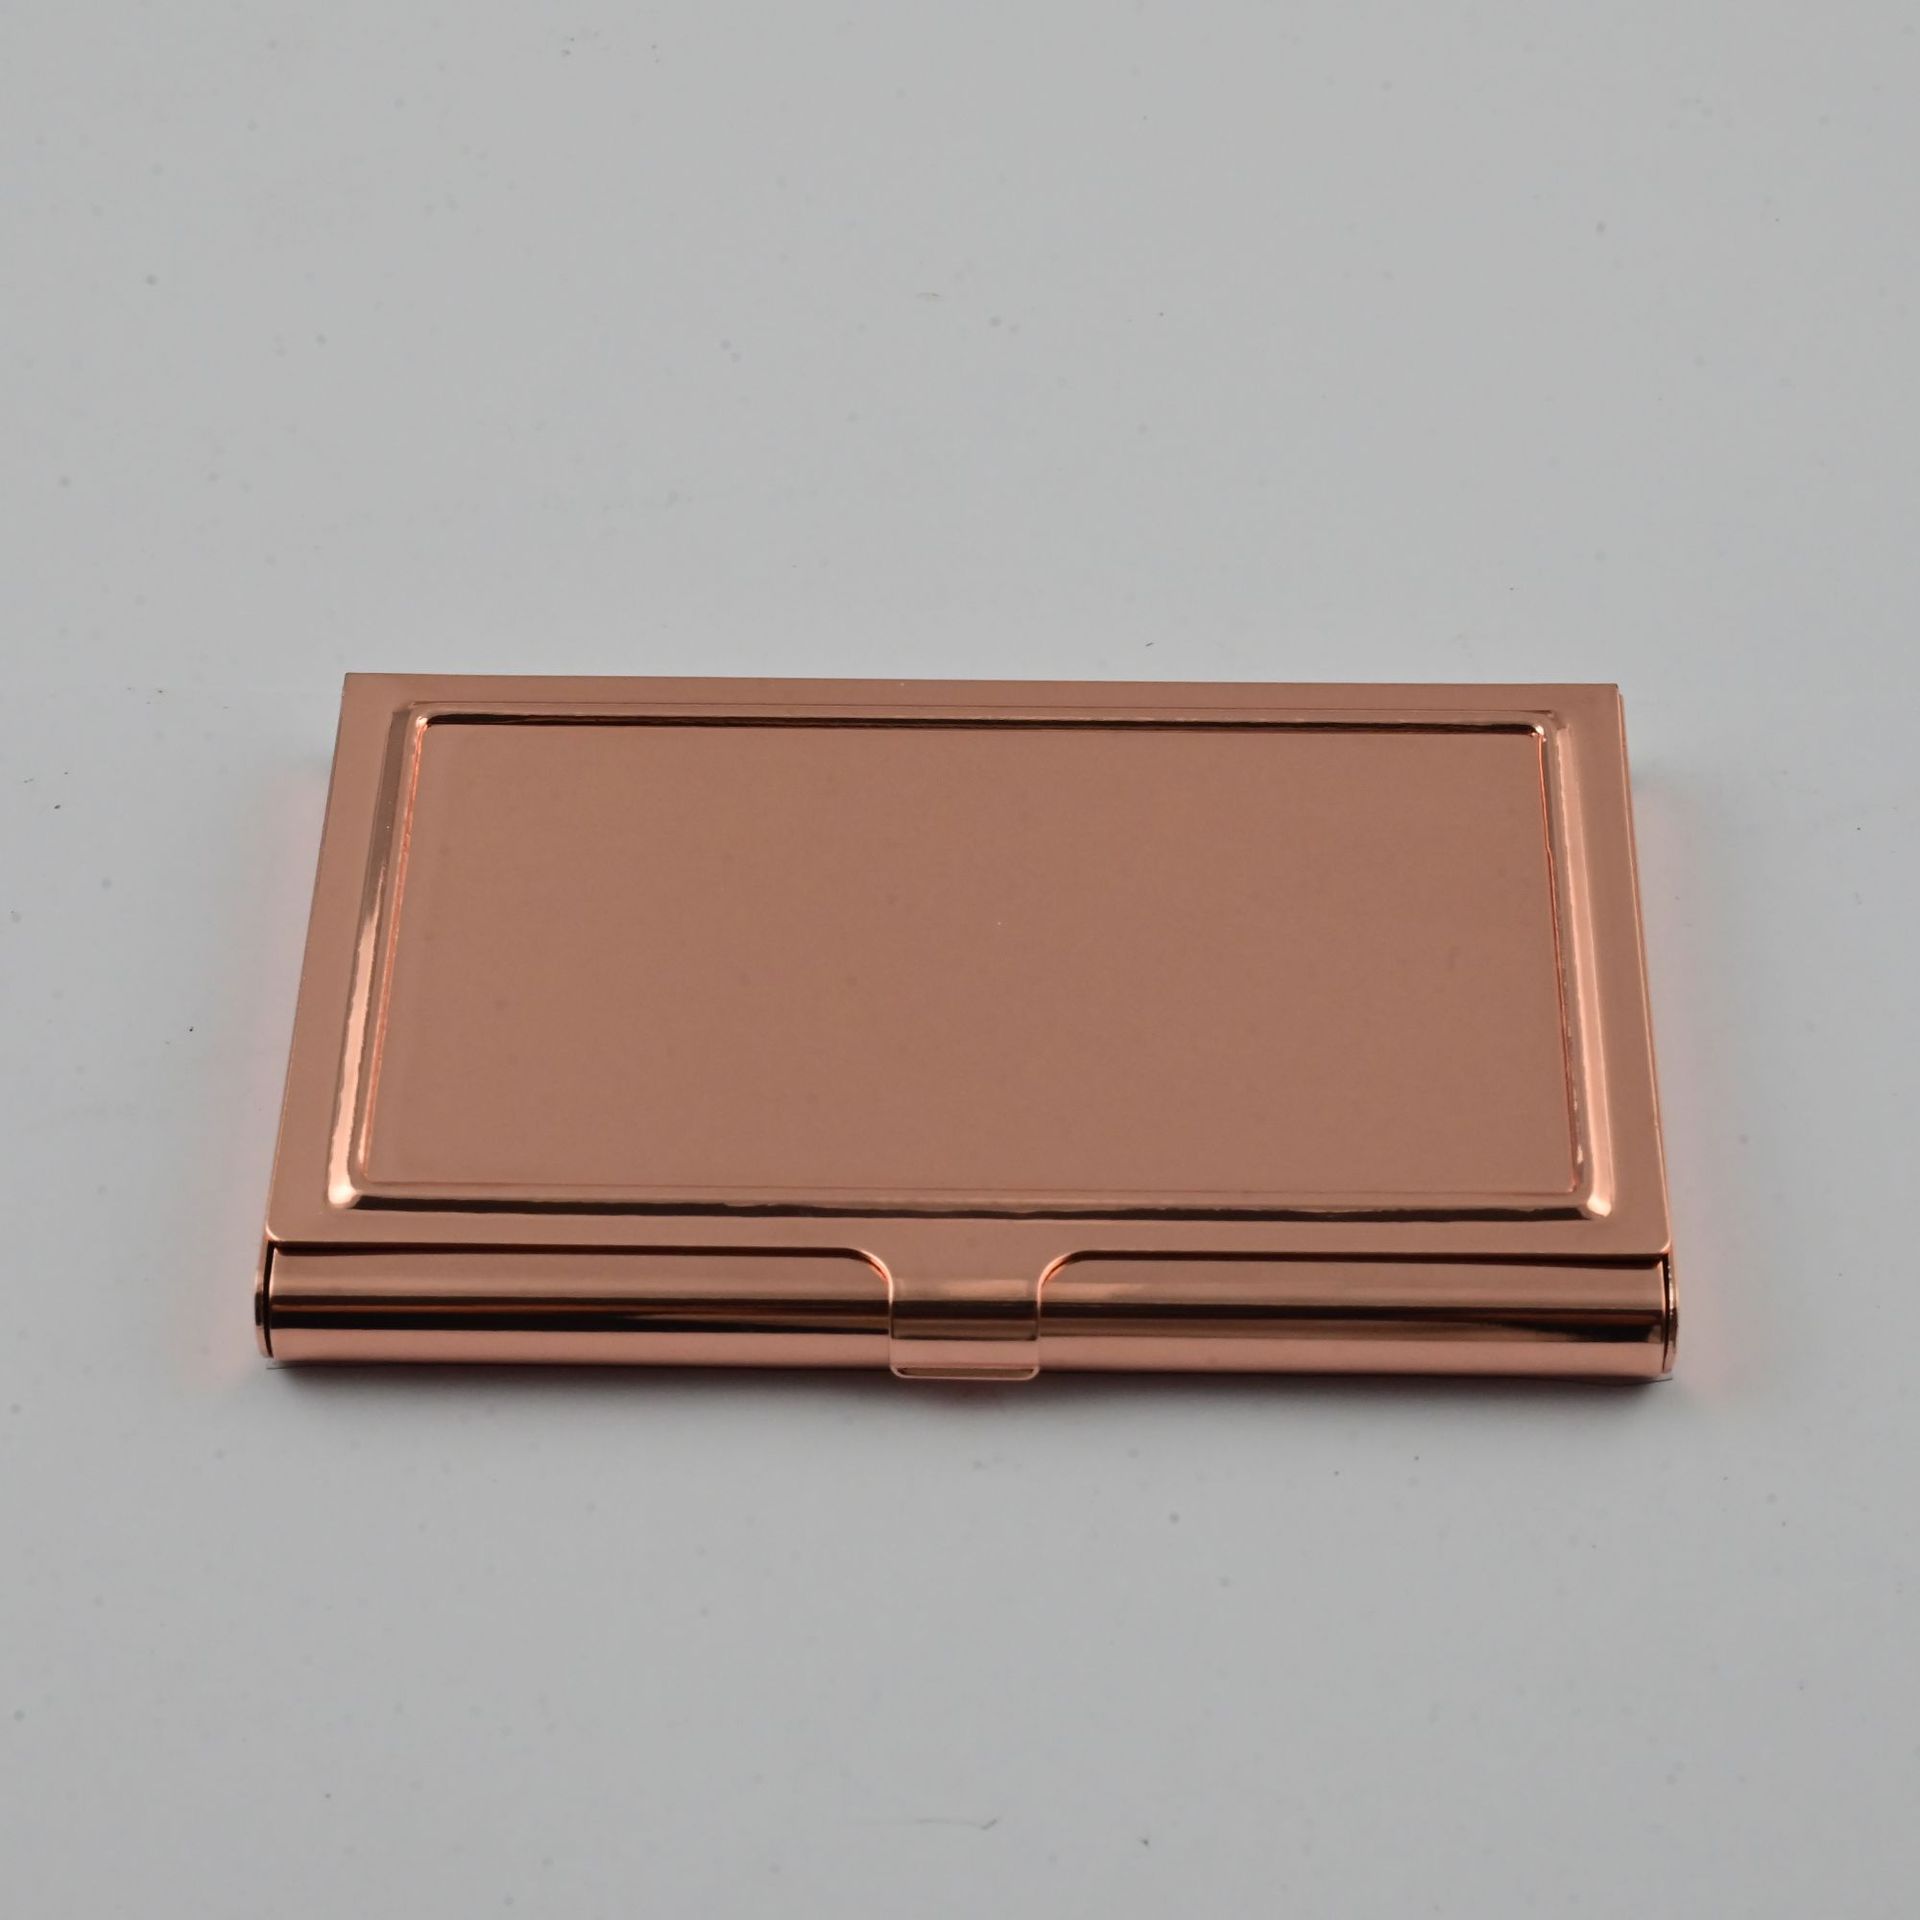 高档红古铜色不锈钢创意名片夹银行卡套公交卡套盒订制金属名片盒